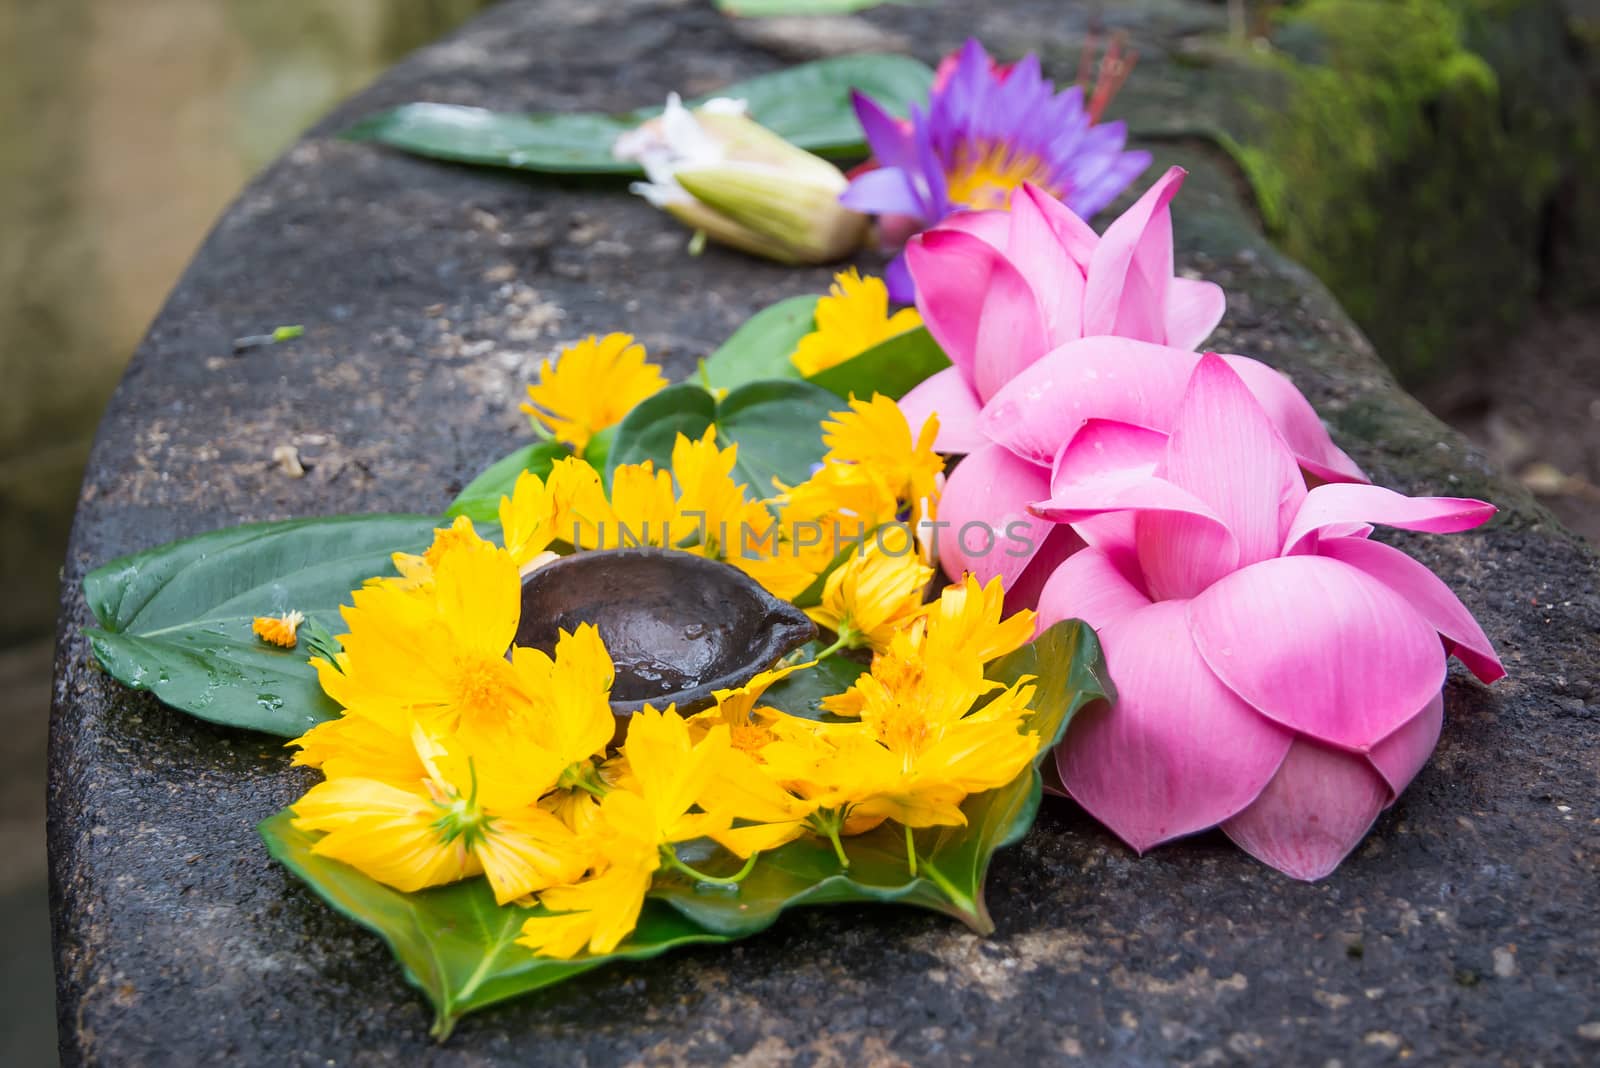 Ceremonial flowers and oil burning arrangement, Sri Lanka, Asia.